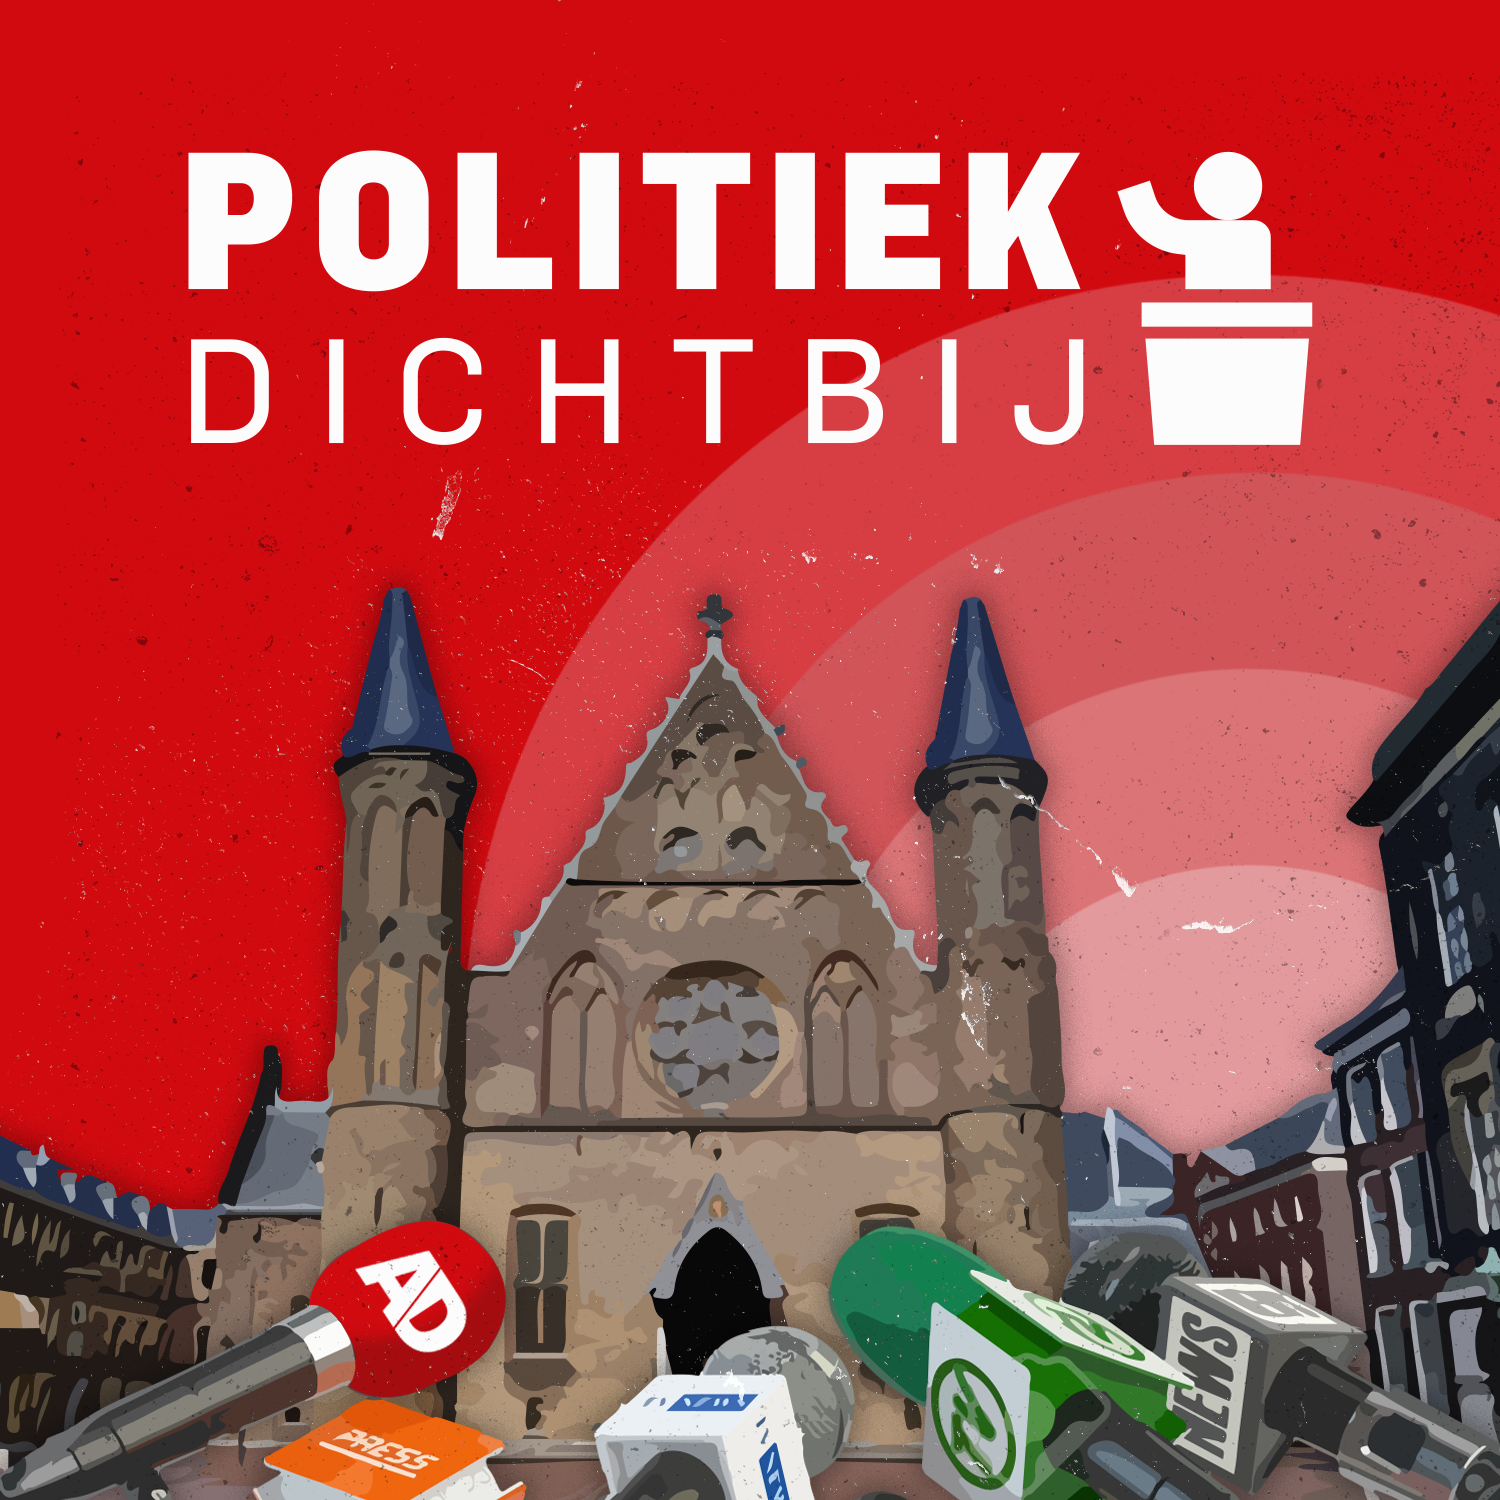 Kaag heft politieke blokkade op en Rutte stuurt Keijzer de laan uit